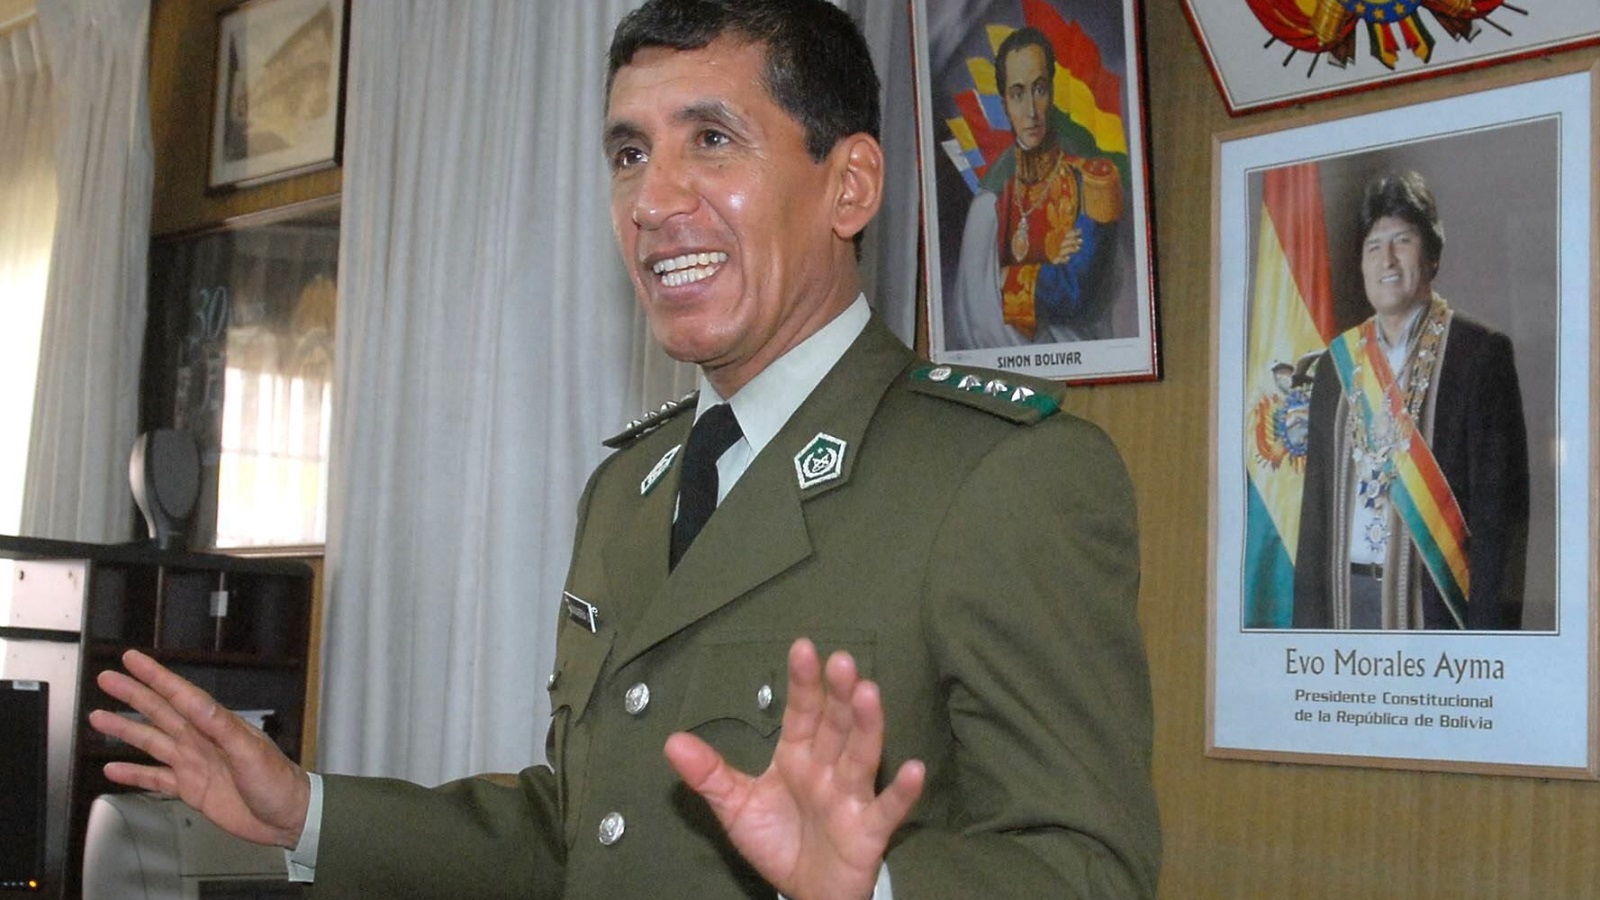 الرئيس السابق للقوة الخاصة لمحاربة المخدرات الجنرال رينيه سانابريا، والذي اعتُقل في بنما عام 2011 بتهمة الاتجار بالمخدرات